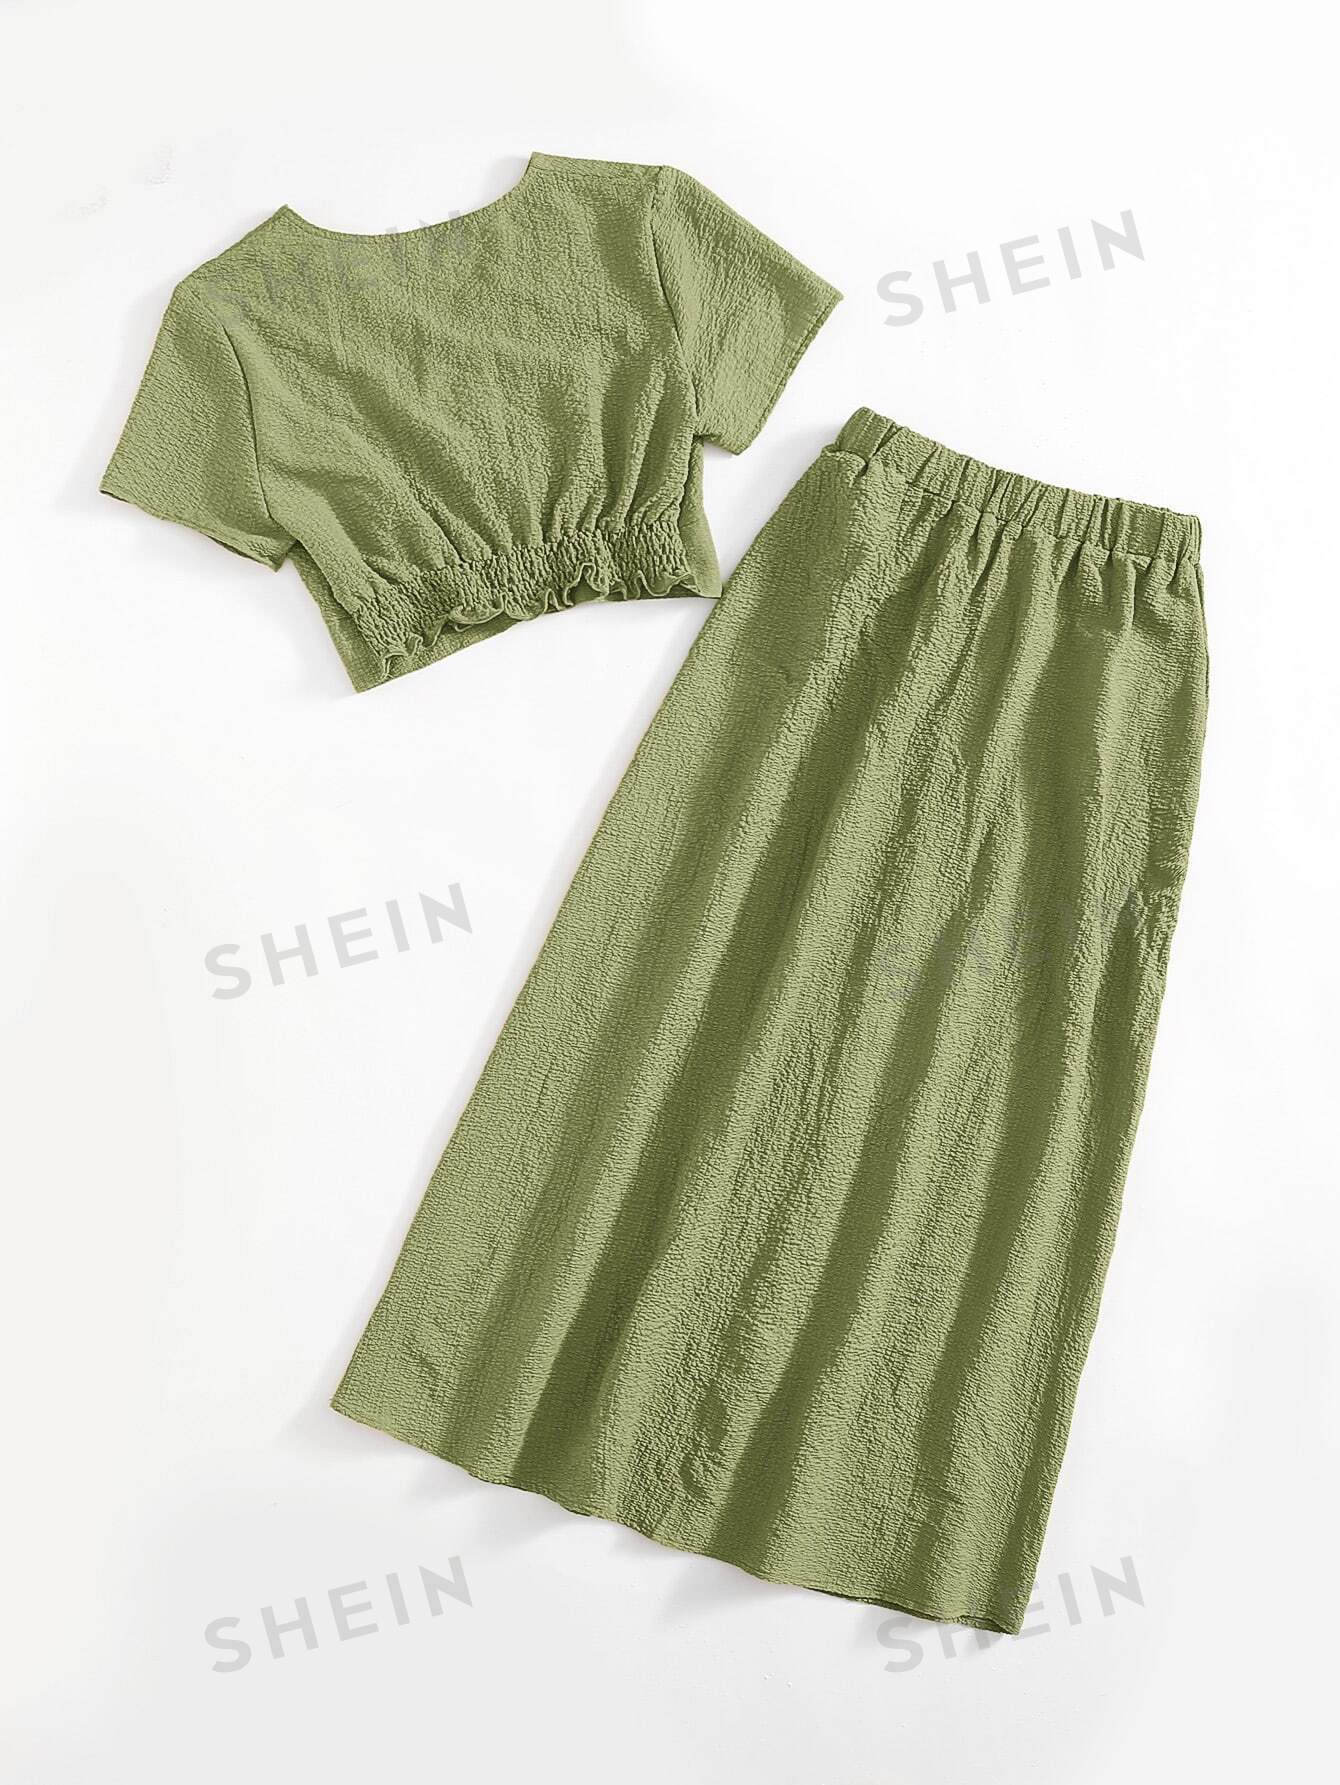 SHEIN Mulvari однотонный текстурированный повседневный комплект из двух предметов, оливково-зеленый детская летняя блузка и юбка розовая блузка и юбка